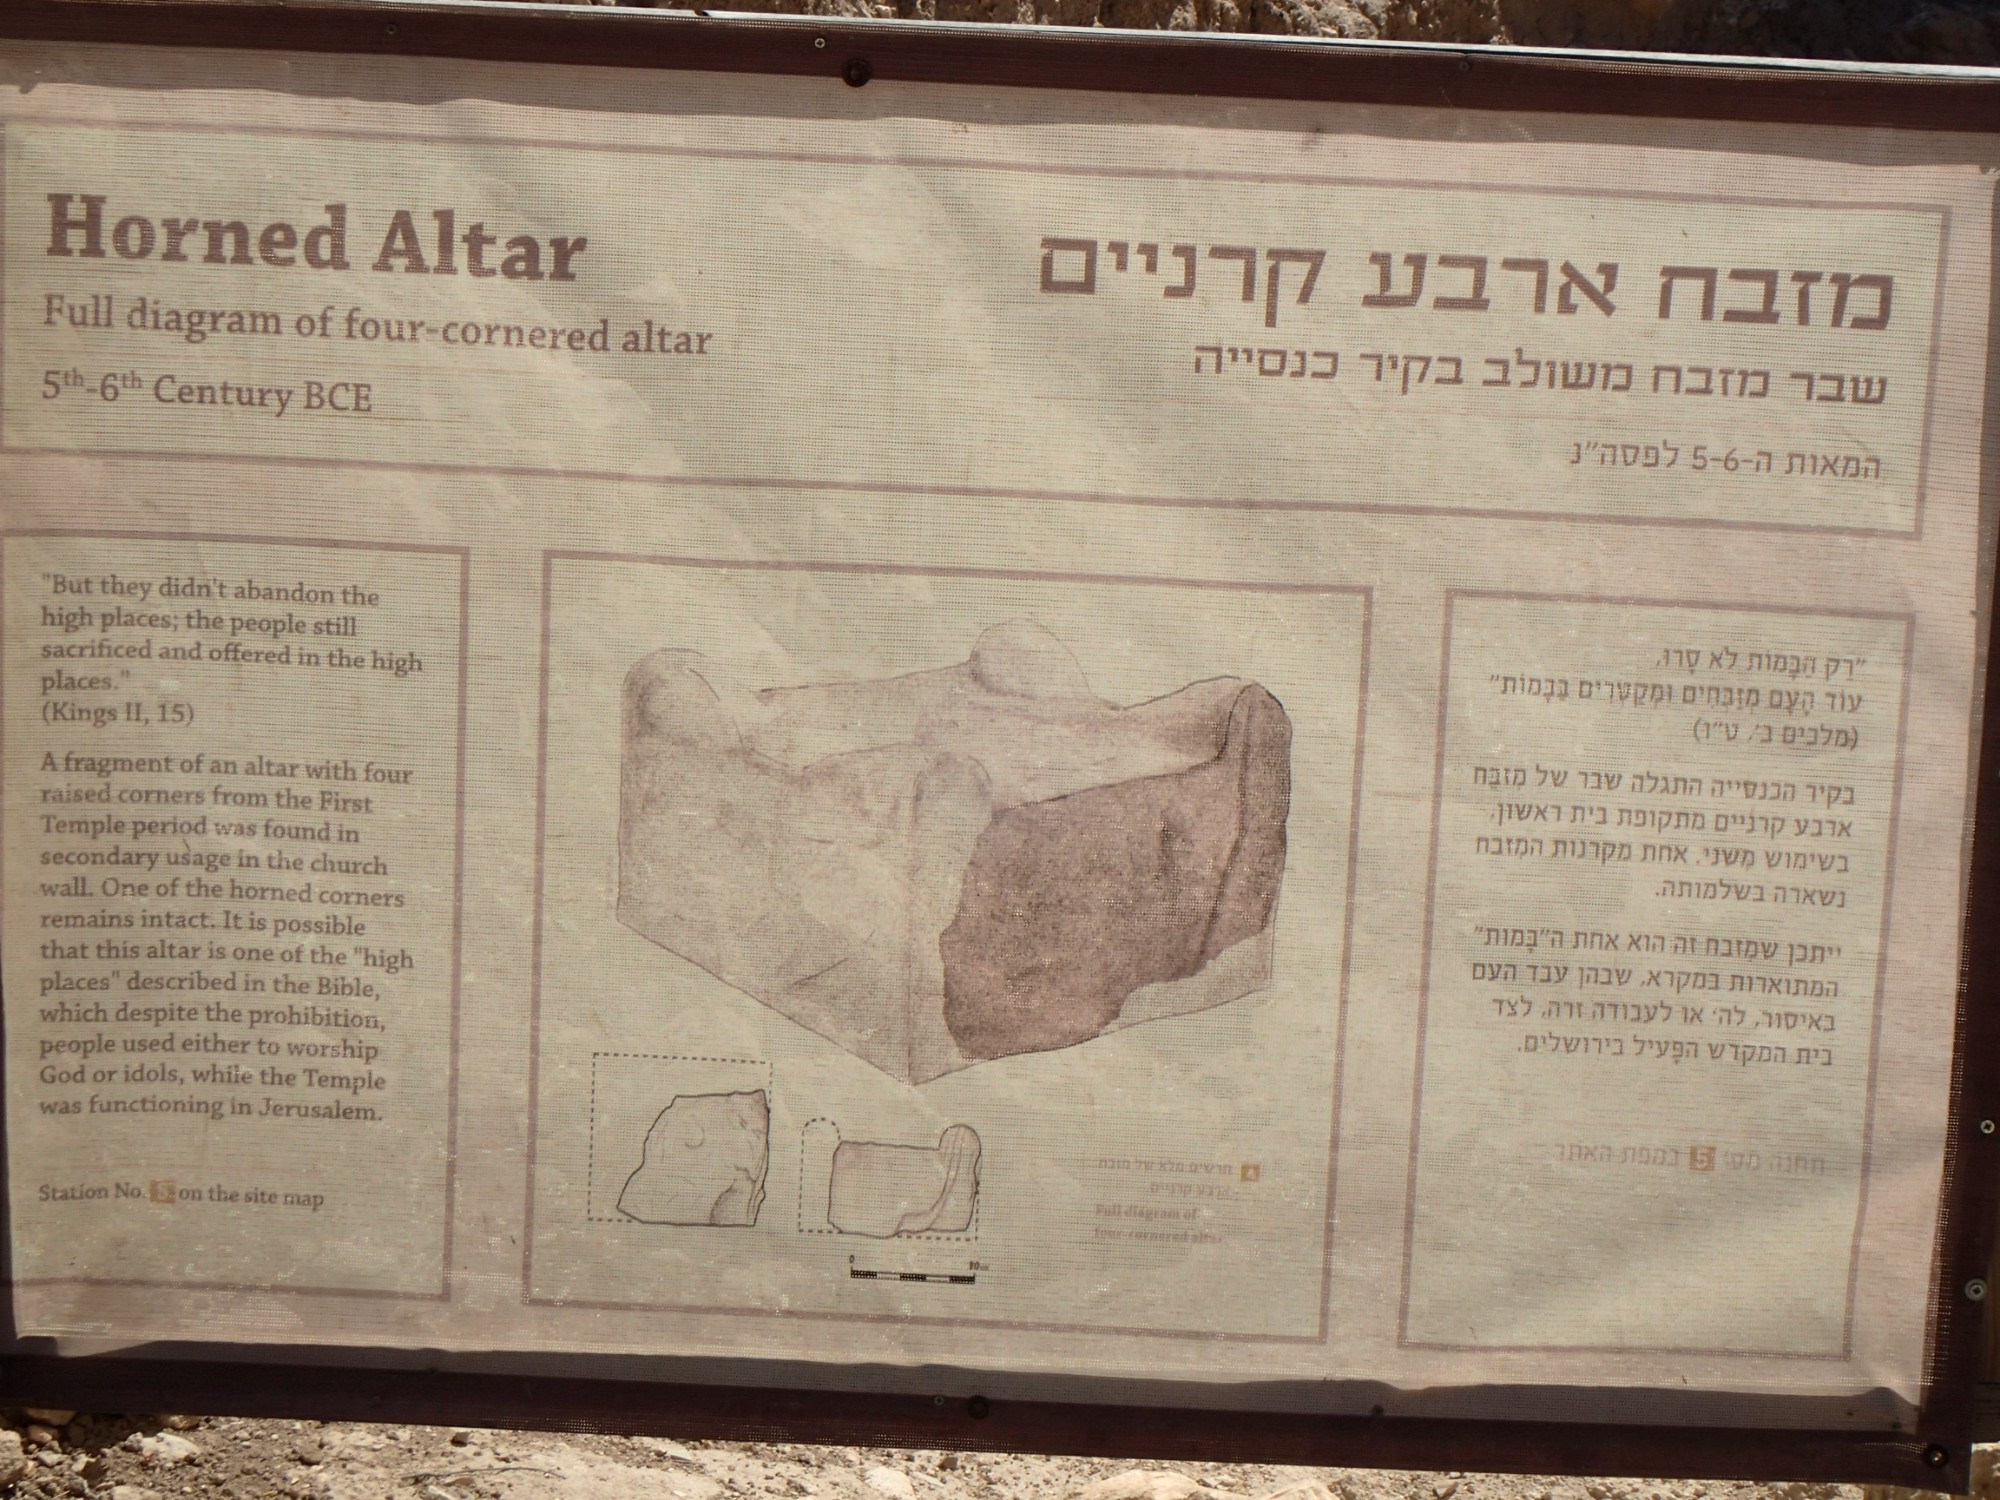 Horned Altar, Палестина